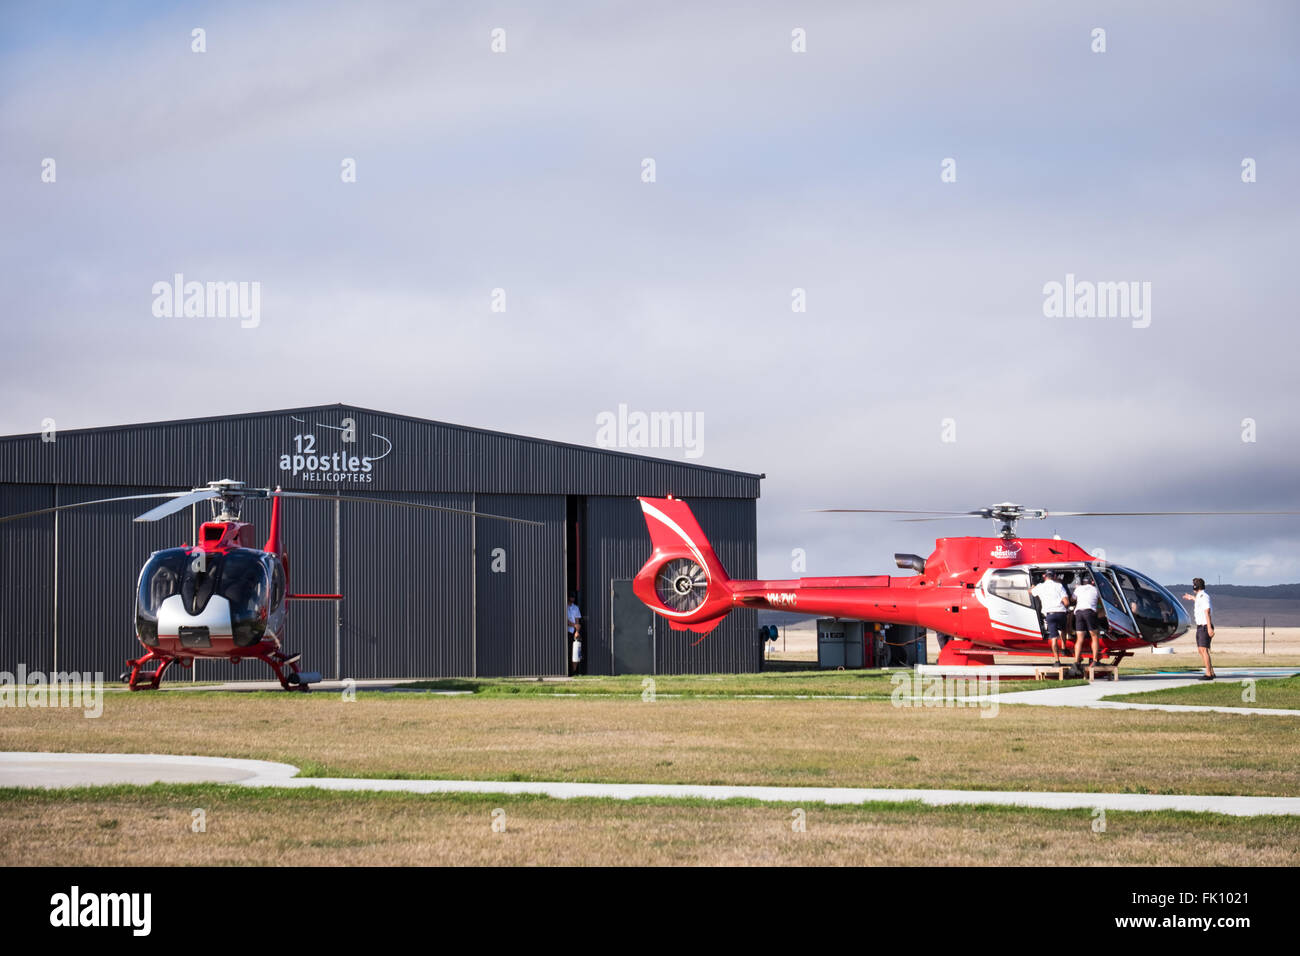 Hélicoptères qui amènent les touristes sur les vols sur les 12 apôtres, le long de la Great Ocean Road, à Victoria, en Australie. Banque D'Images